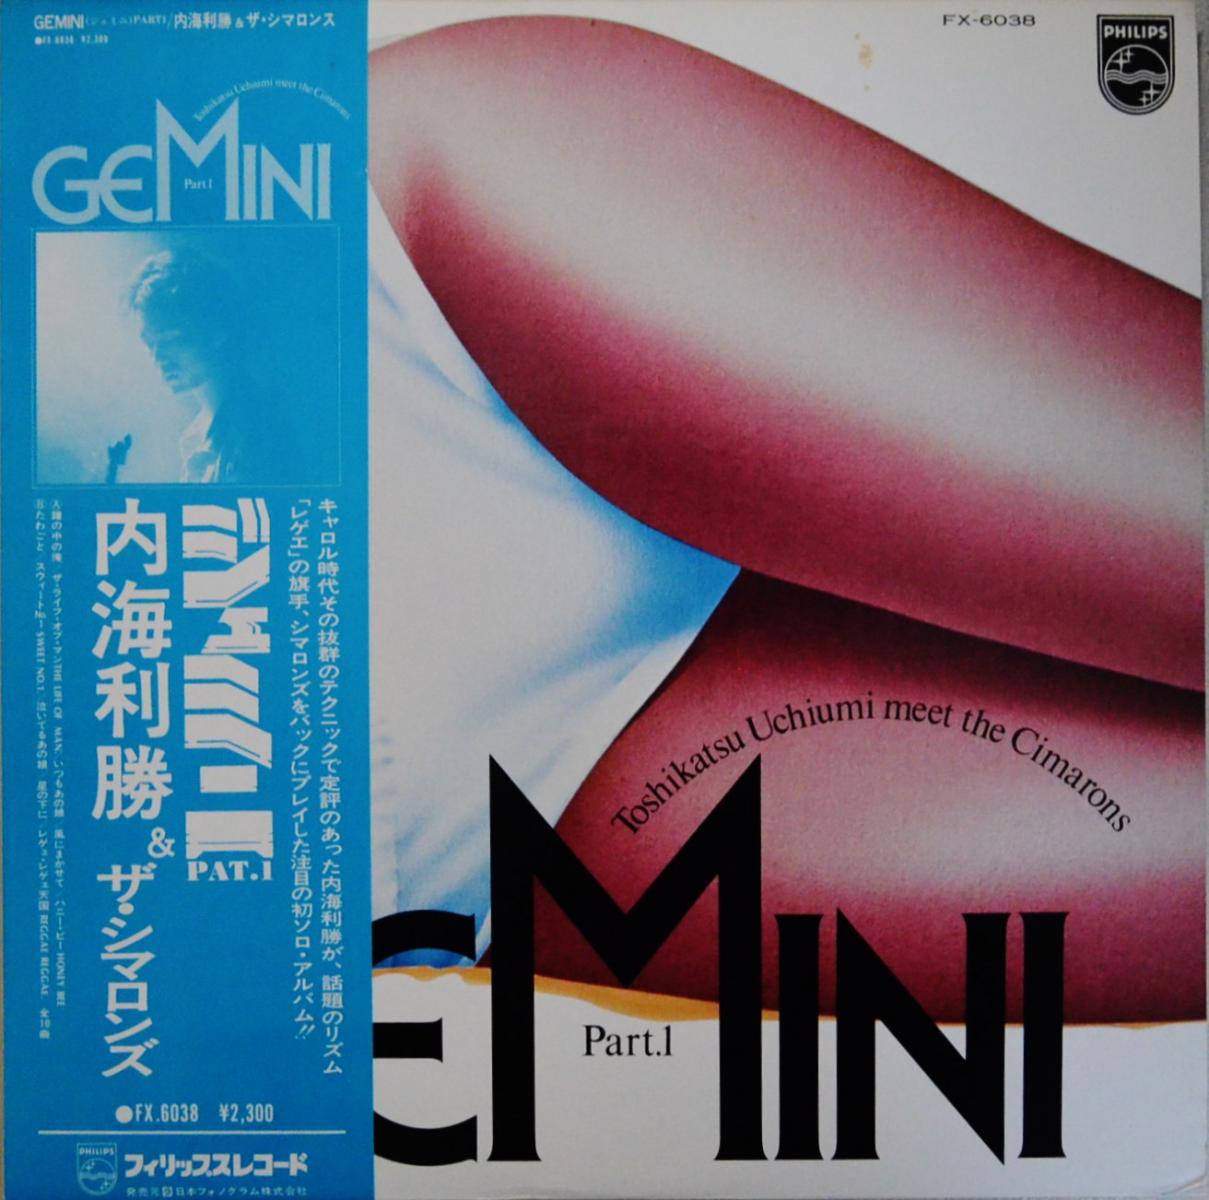 内海利勝 & ザ・シマロンズ TOSHIKATSU UCHIUMI & THE CIMARONS / ジェミニ PART 1 GEMINI PART 1 (LP)